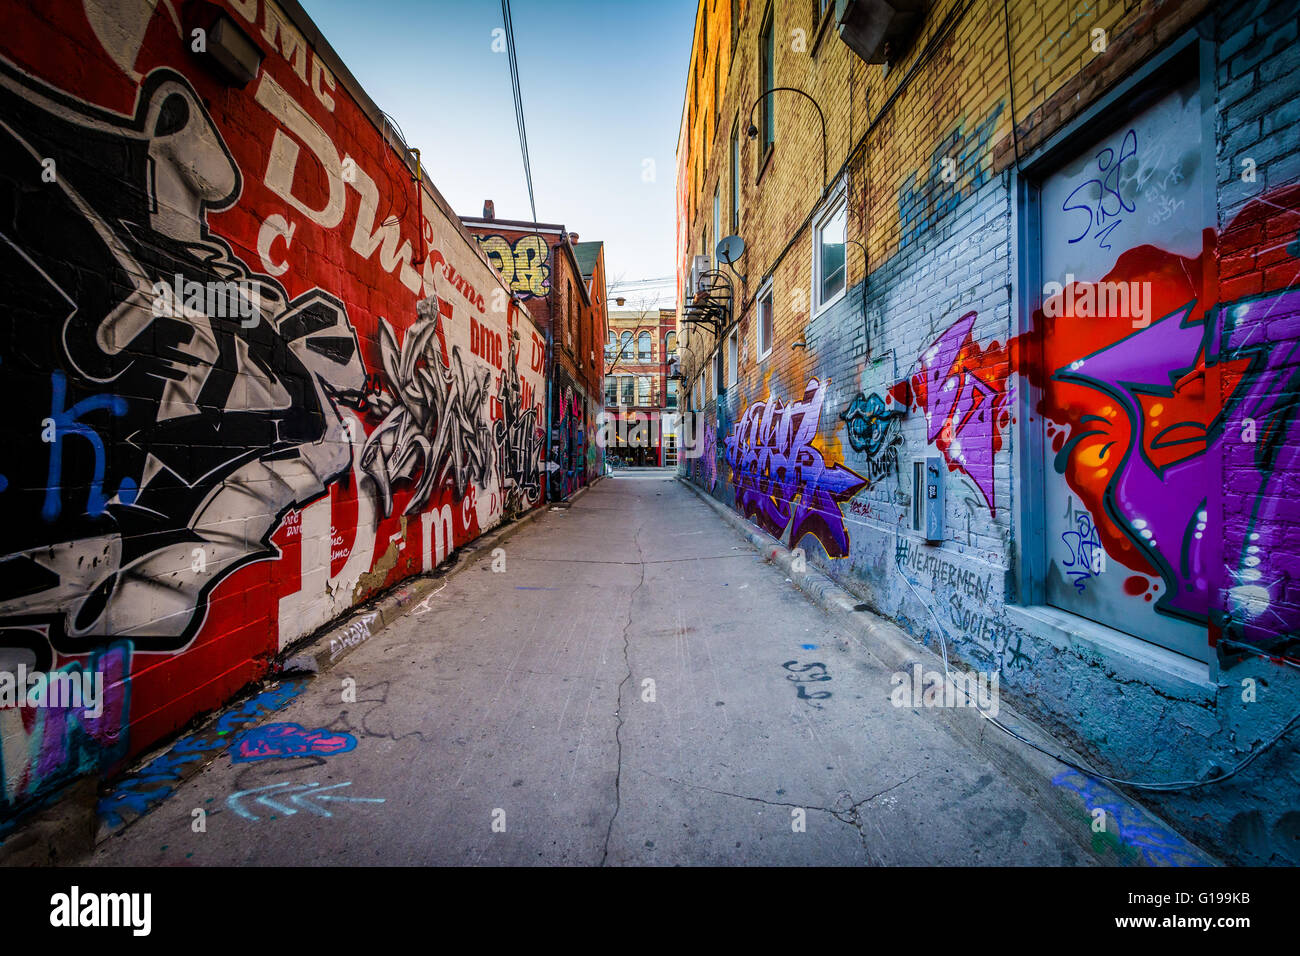 Arte en la calle en Graffiti Alley, en el distrito de la moda de Toronto, Ontario. Foto de stock